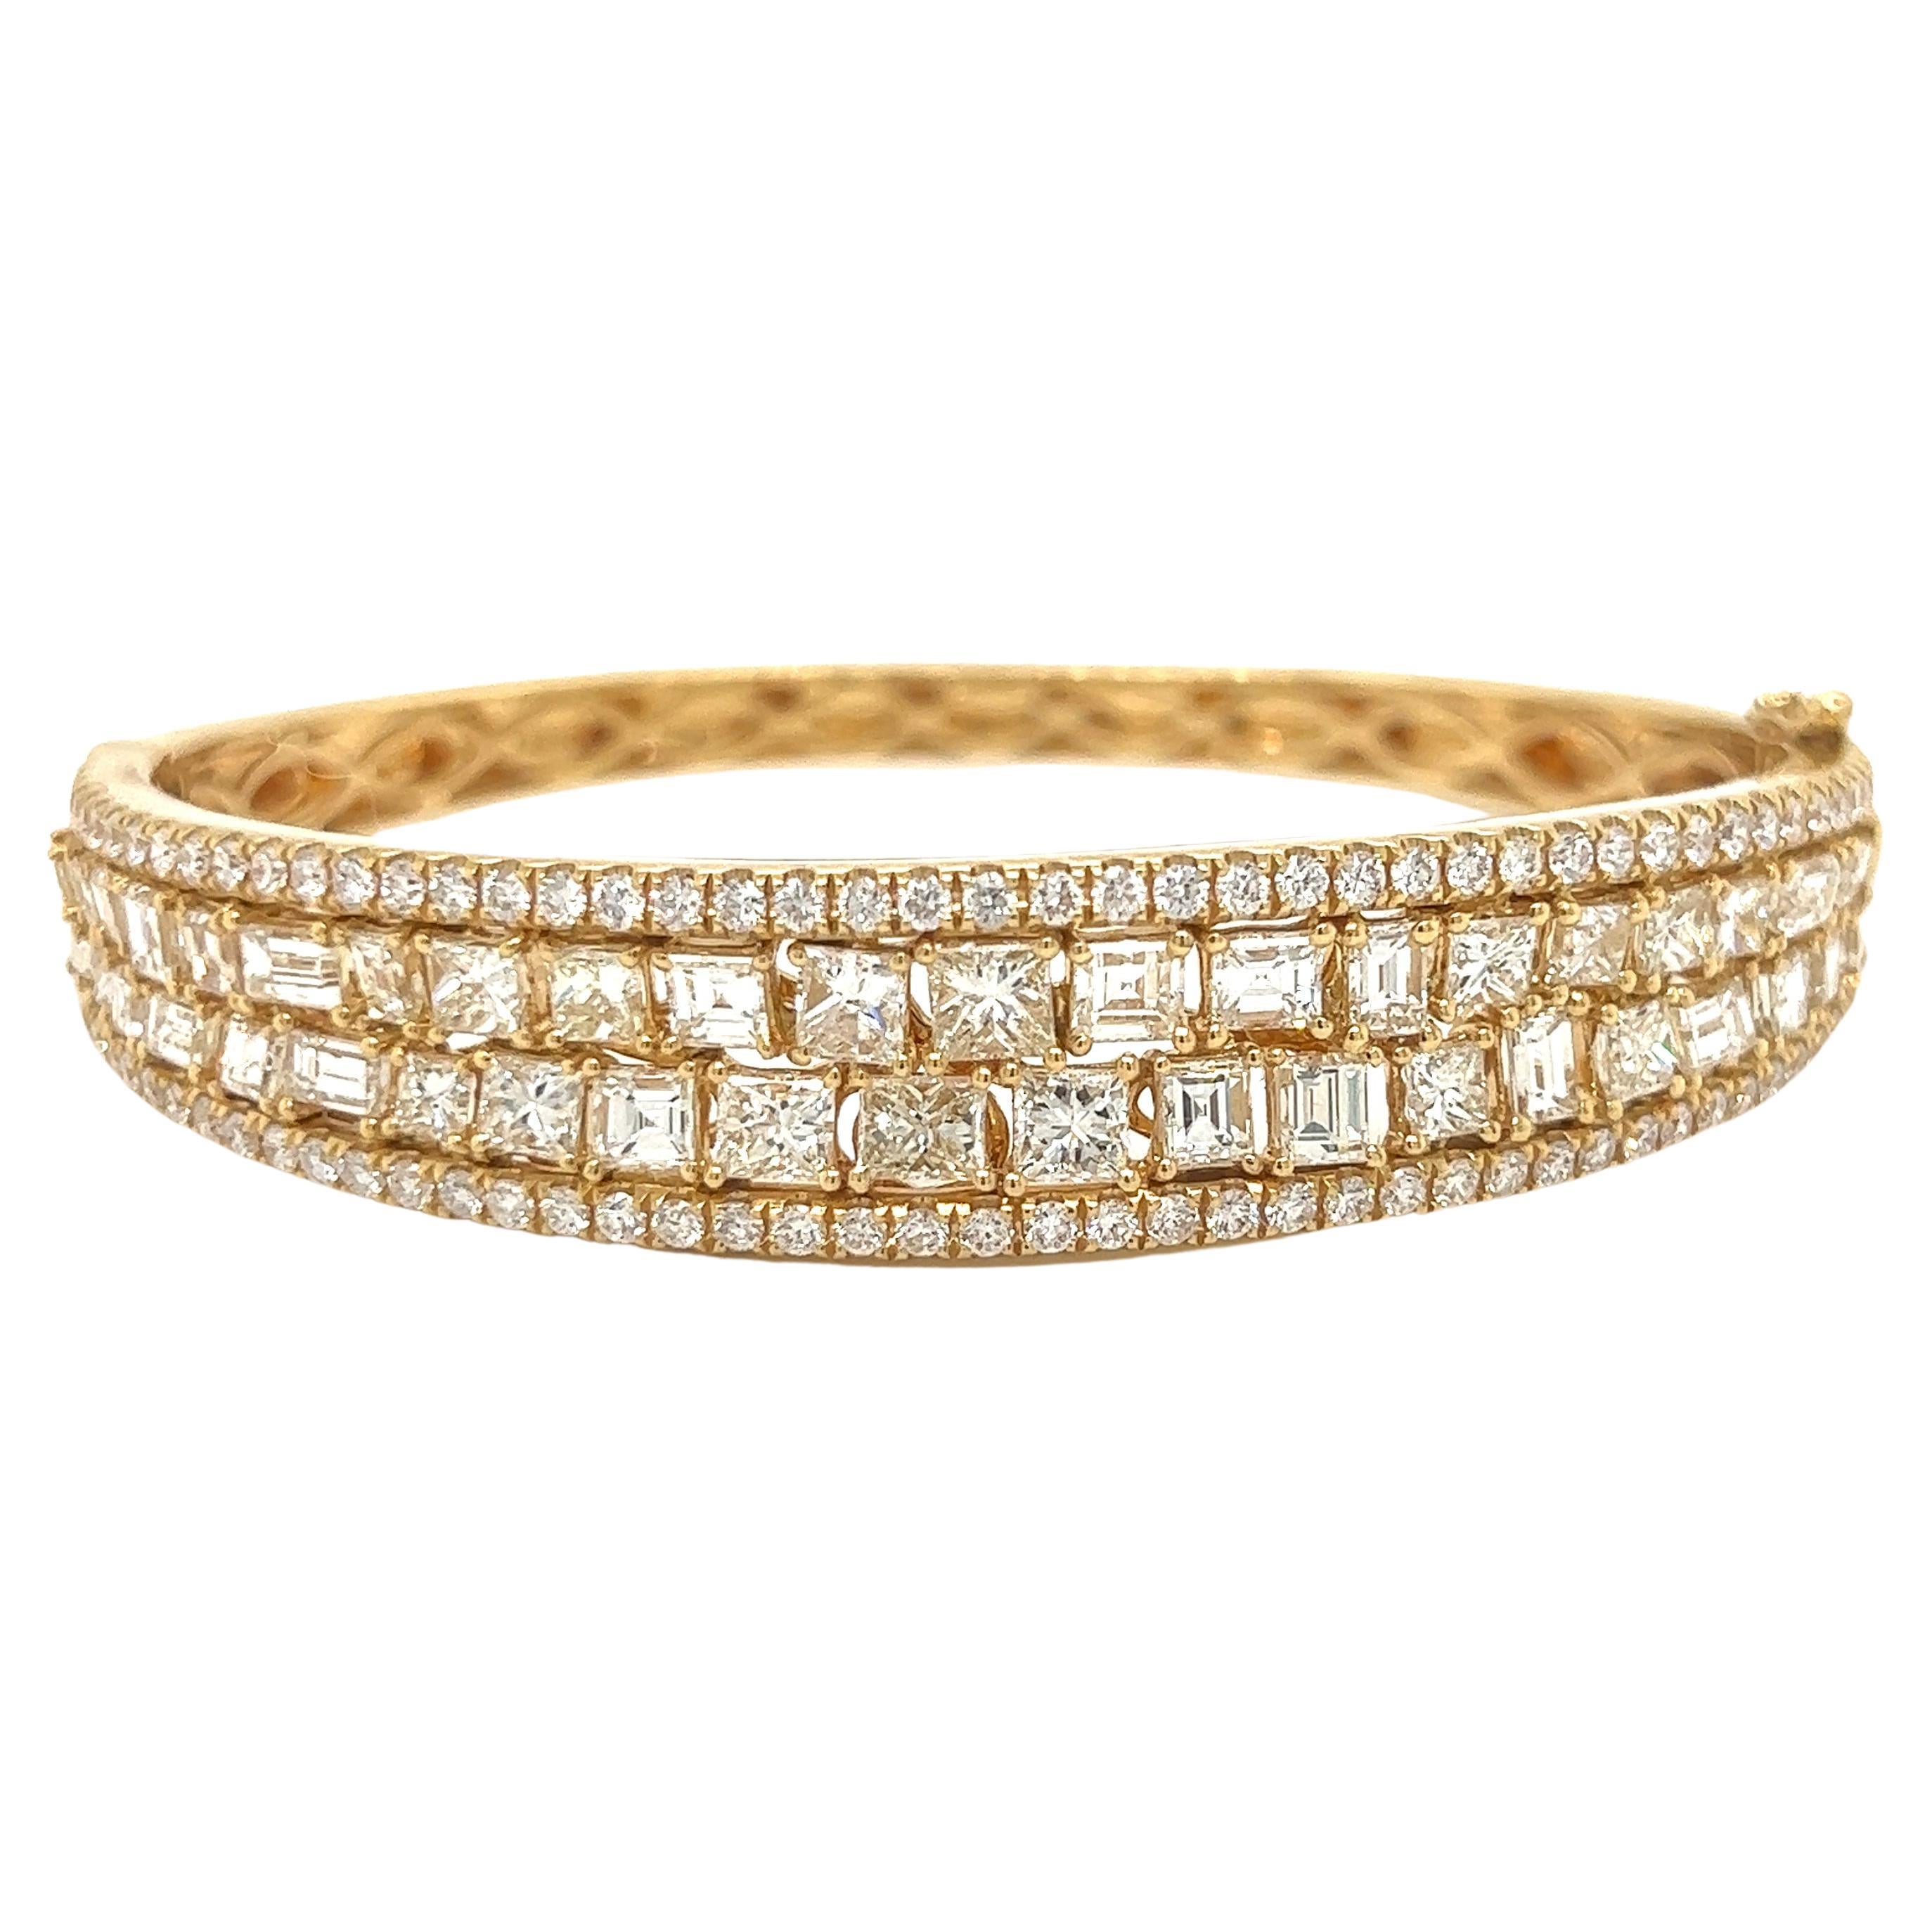 Bracelet de créateur en or jaune et diamants 9,05 carats